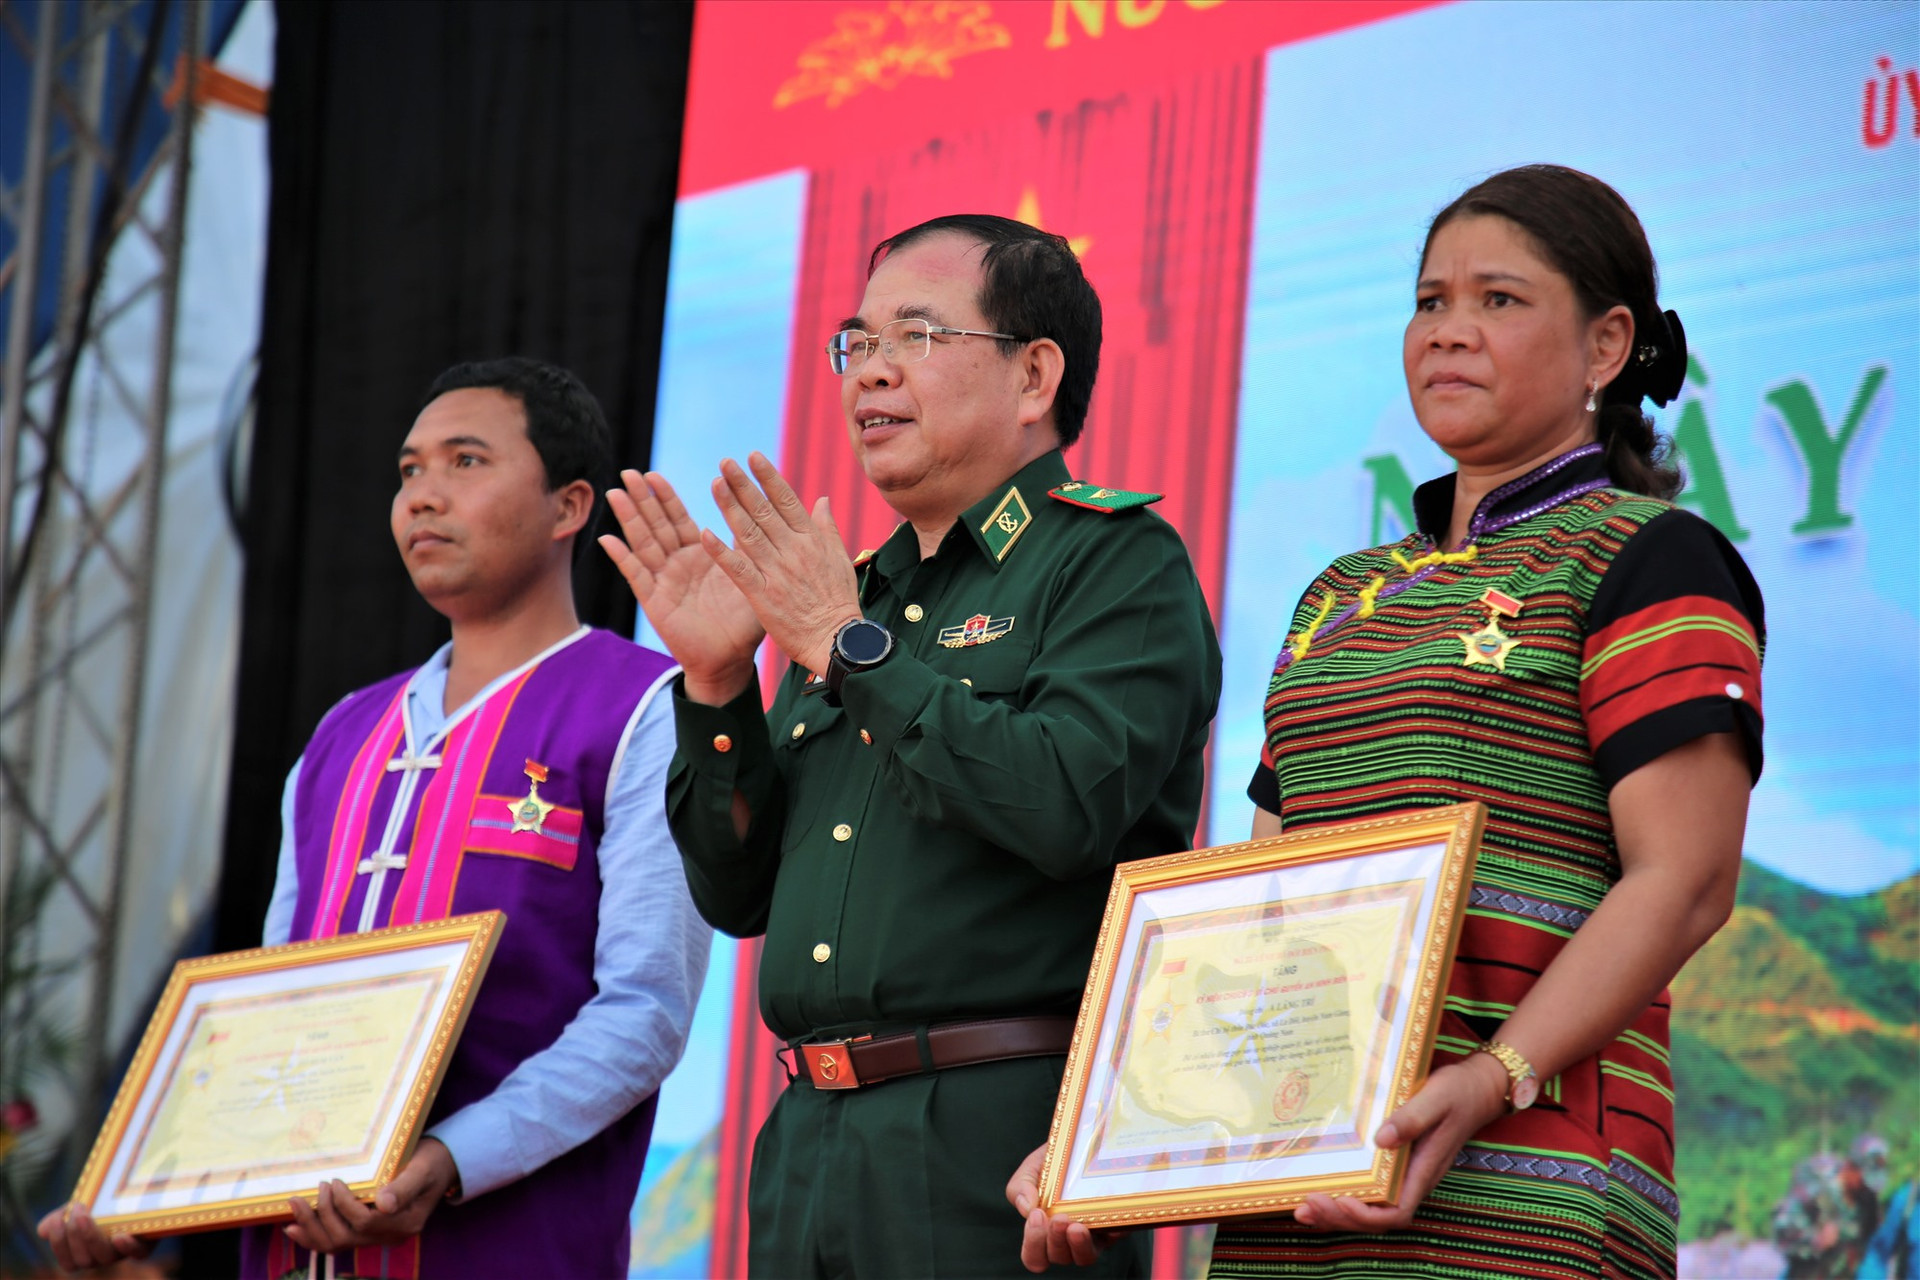 Thiếu tướng Phùng Quốc Tuấn - Phó Chính ủy BĐBP trao kỷ niệm chương cho 2 cá nhân có thành tích xuất sắc trong bảo vệ biên giới. Ảnh: A.N